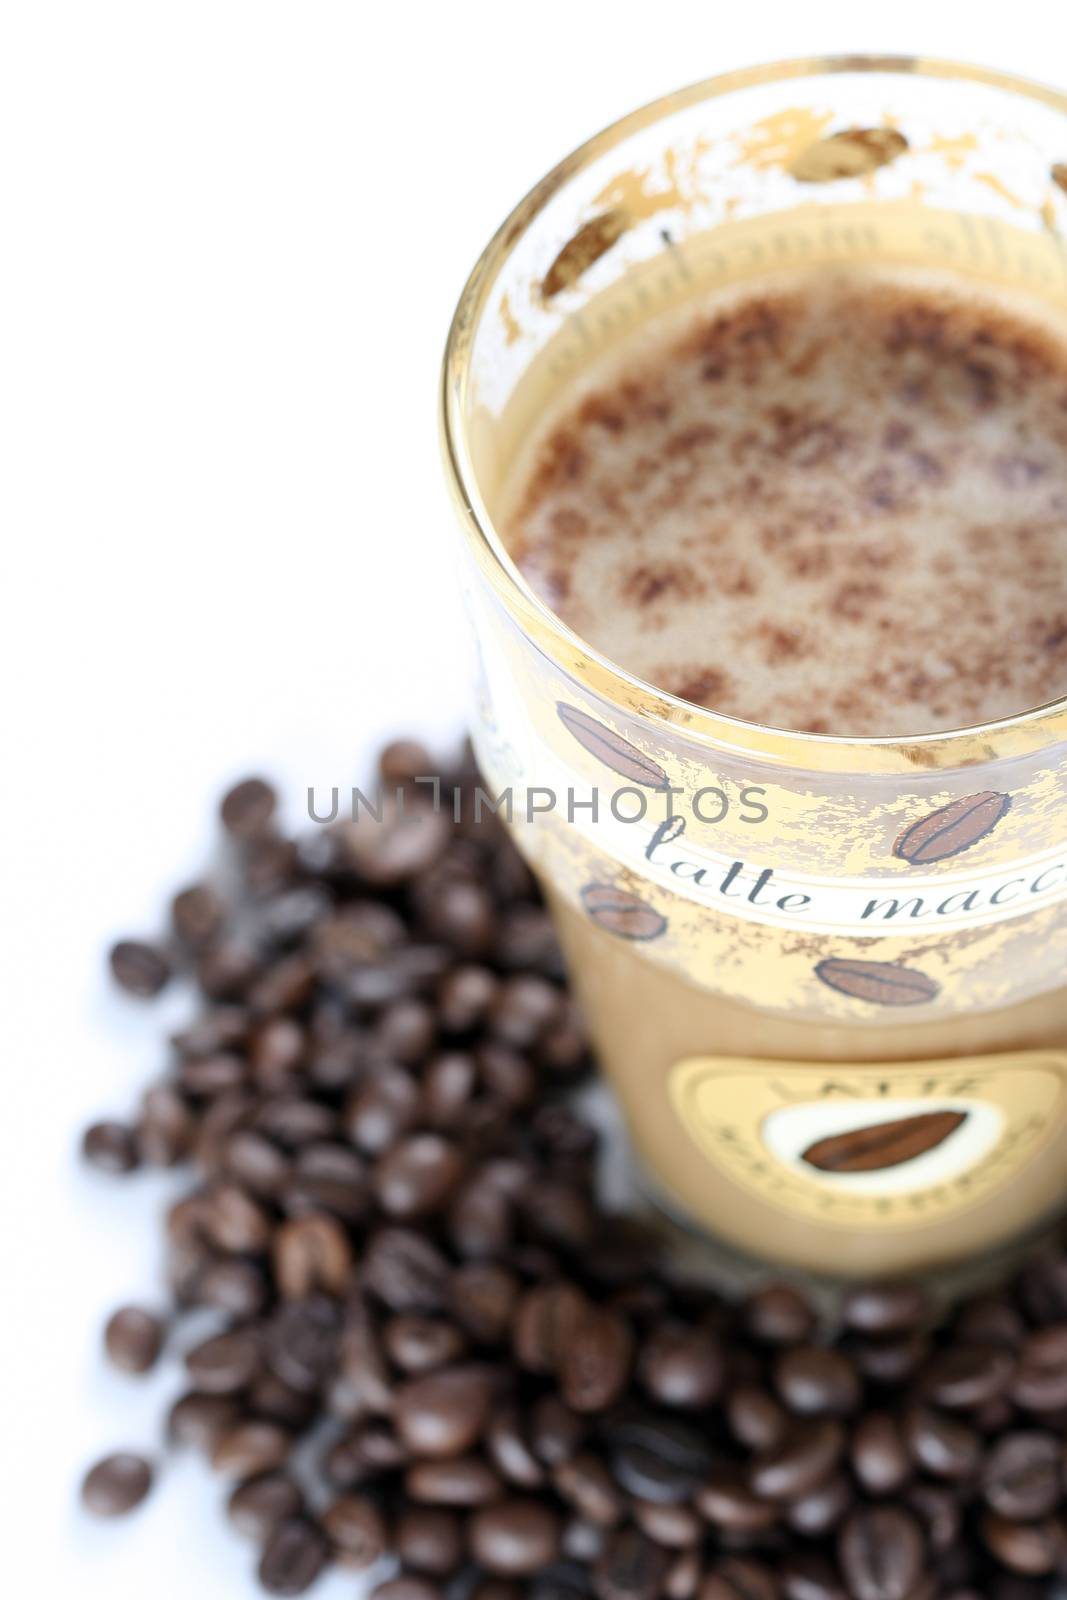 Latte Macchiato in glass costing on coffee grain